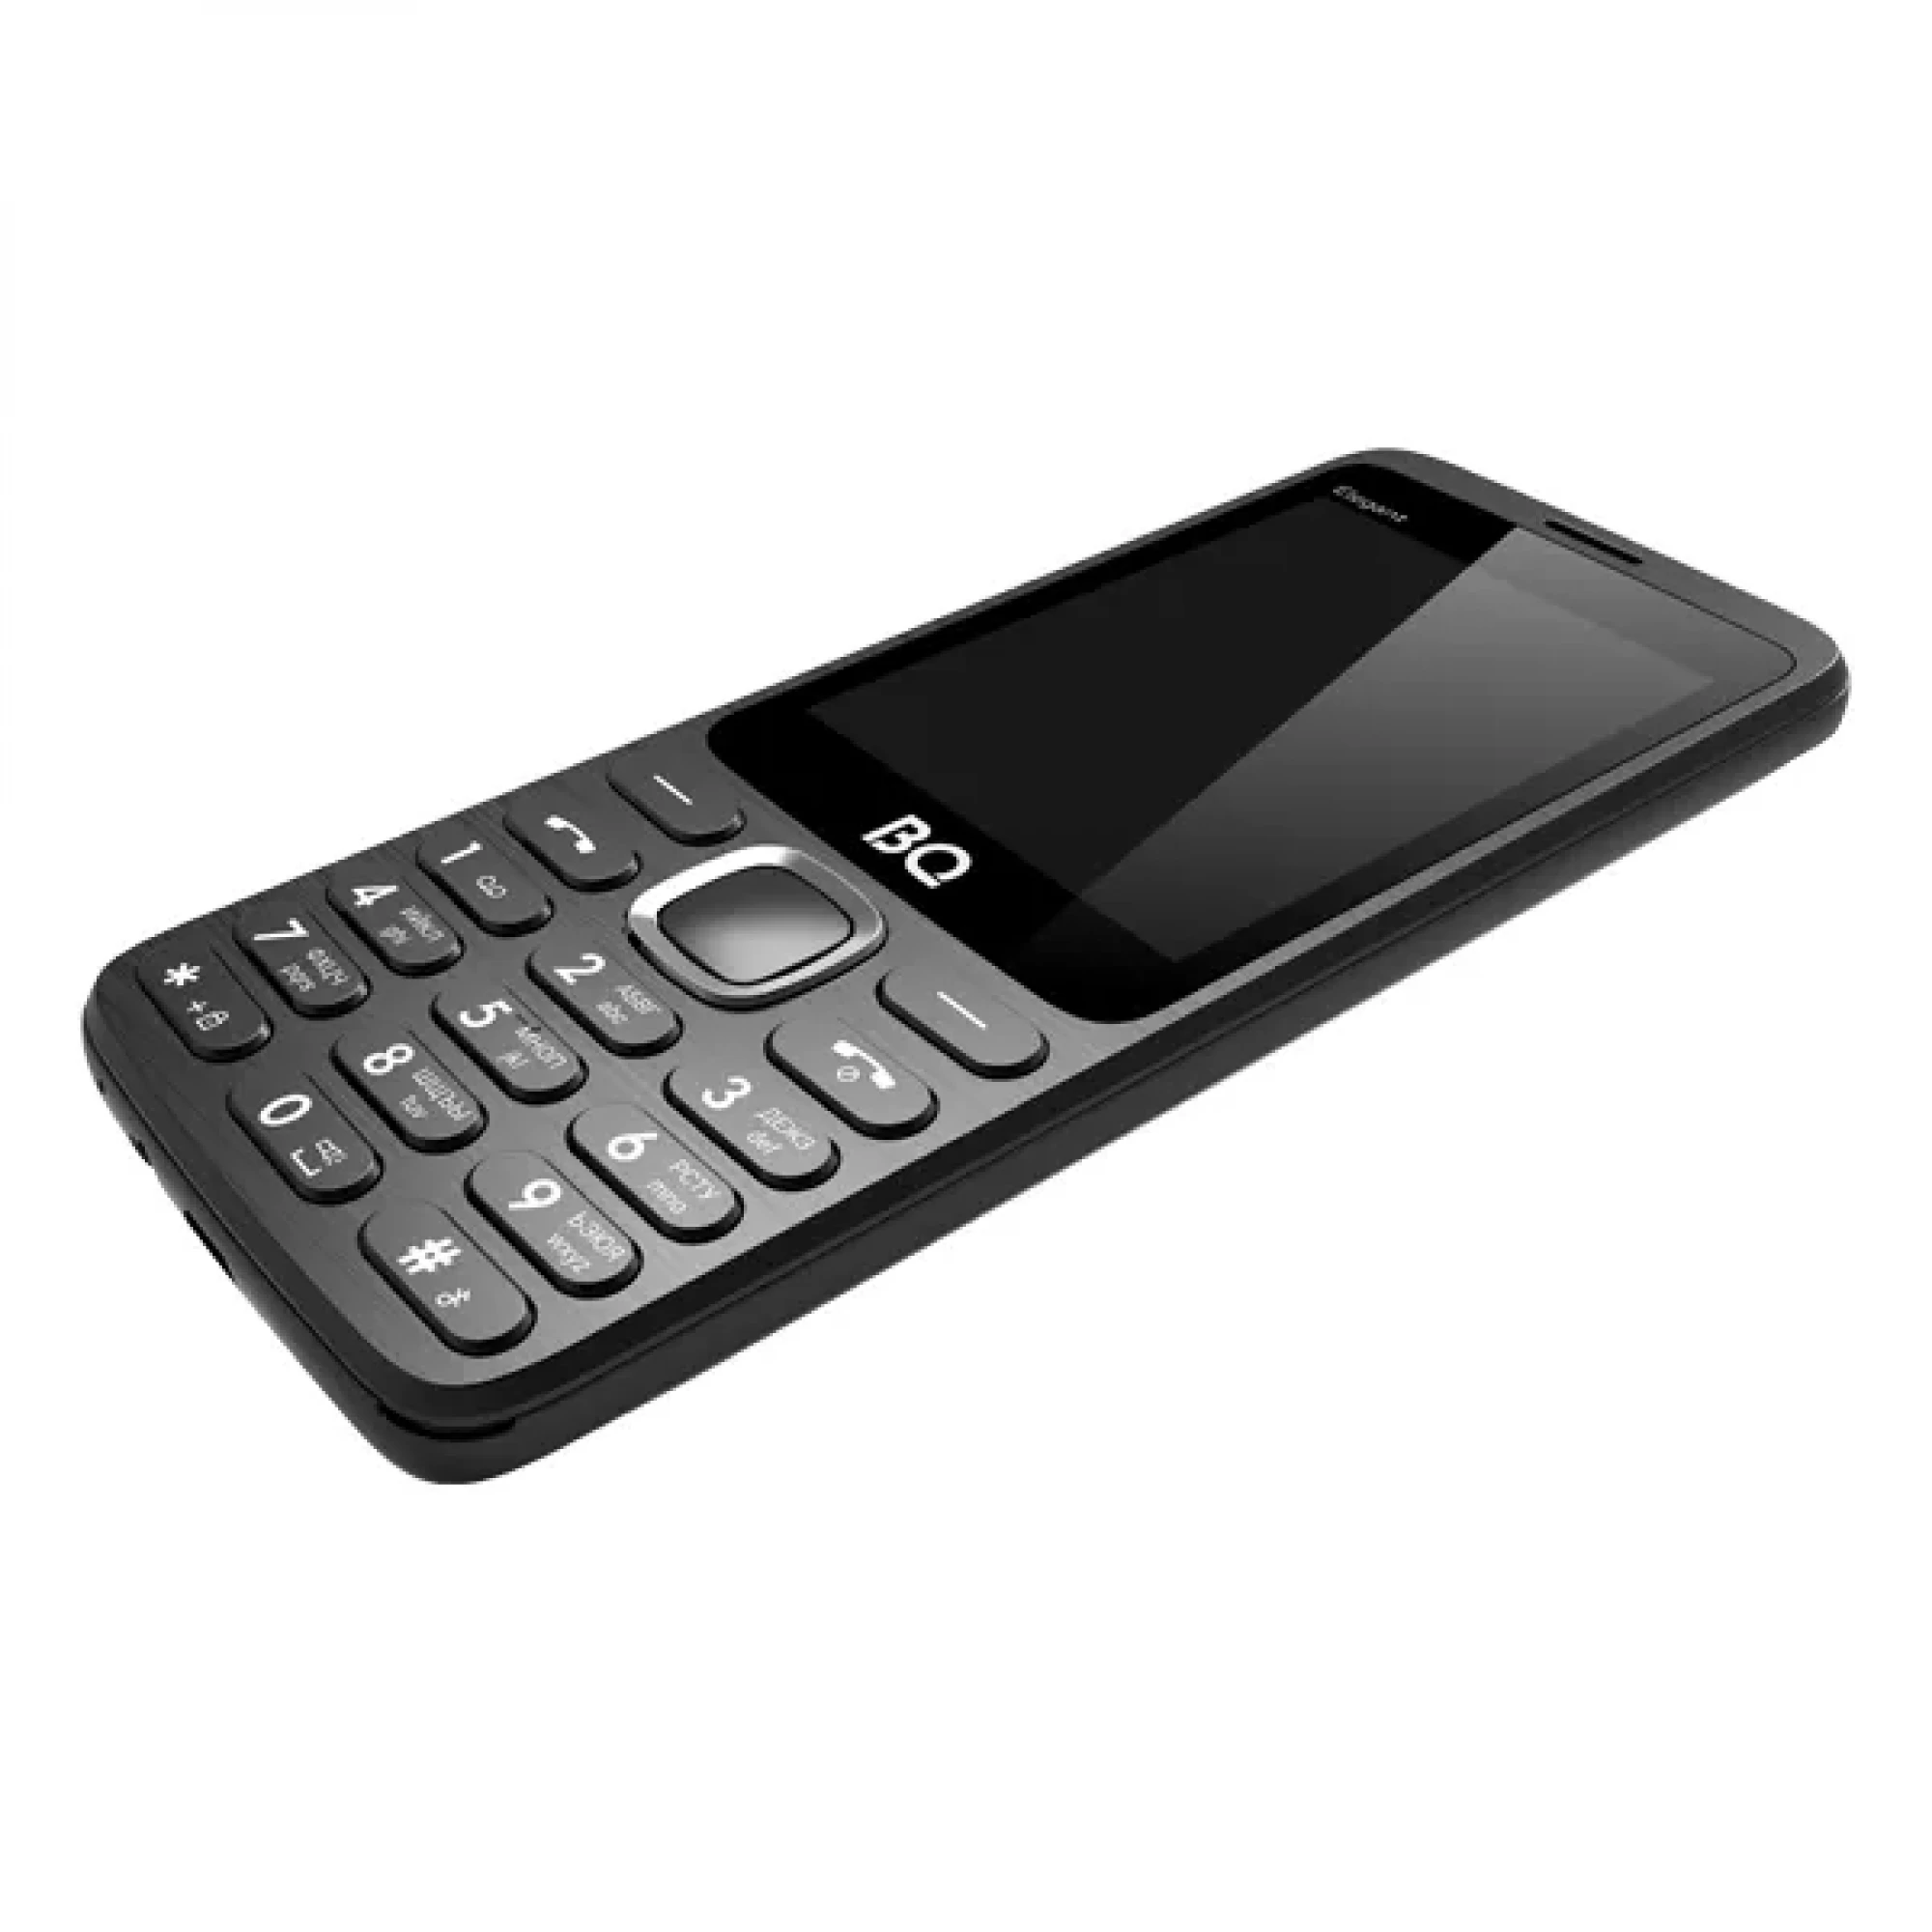 Мобильный телефон BQ BQ-2823 Elegant (черный)